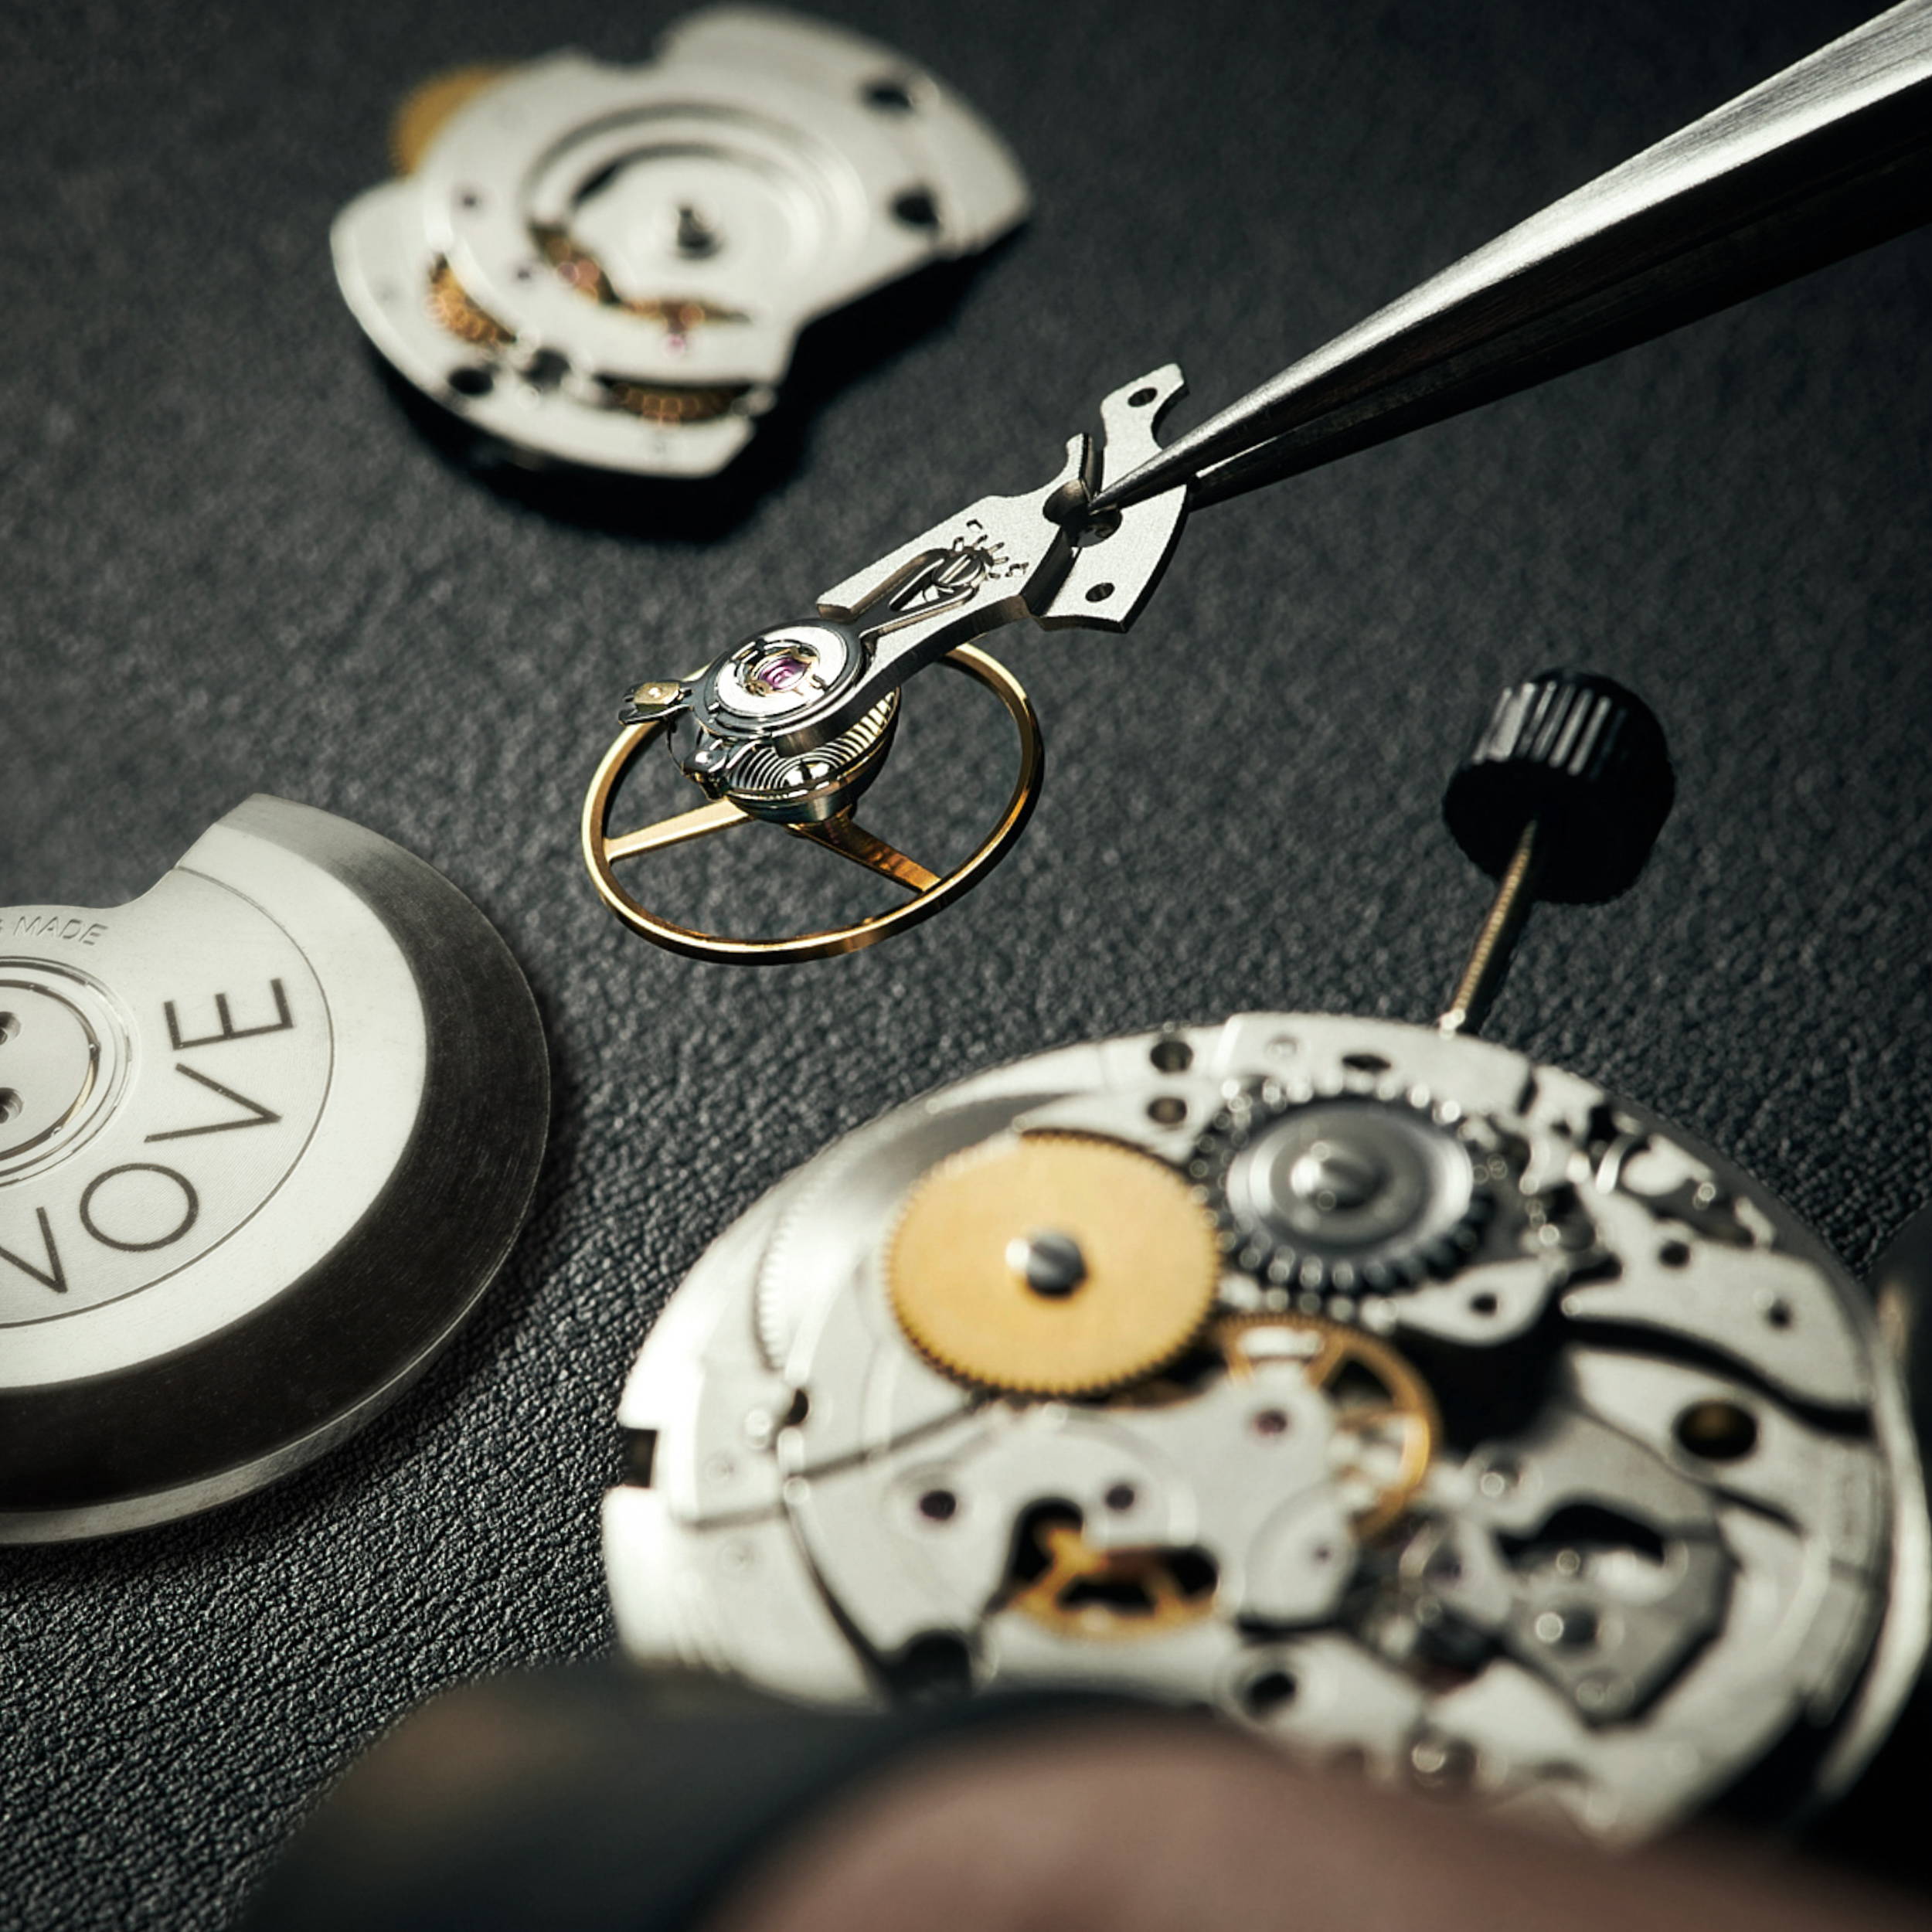 Swiss Made watch movement Ronda R150 assembled